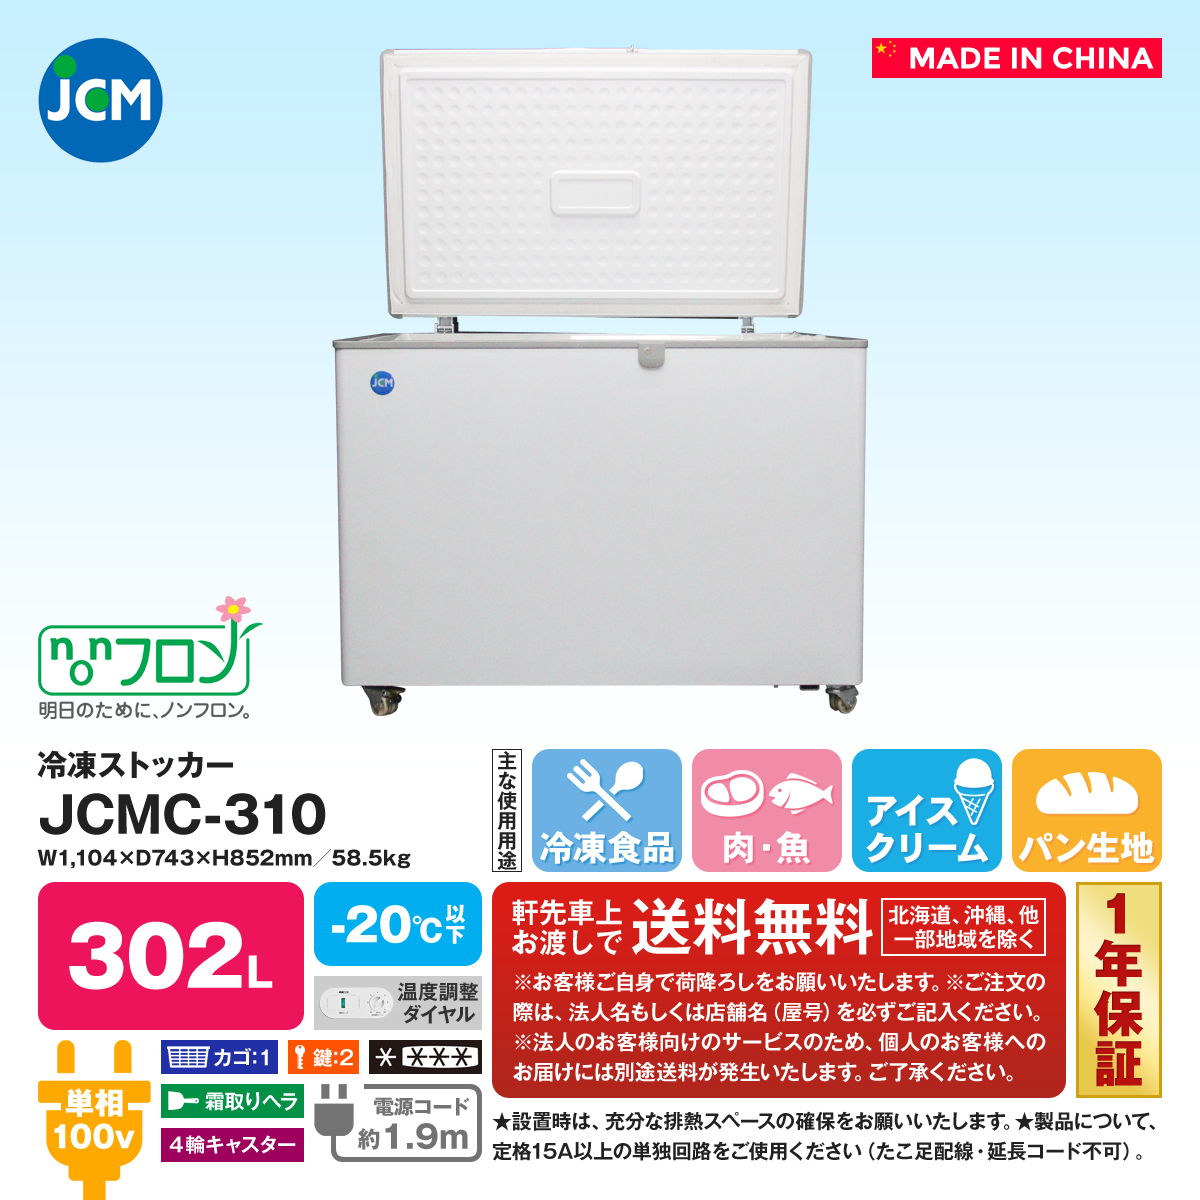 冷凍ストッカー 冷凍庫 保冷庫 業務用冷凍庫 フリーザー JCMC-142  142L キャスター付 鍵付 小型冷凍庫  - 2